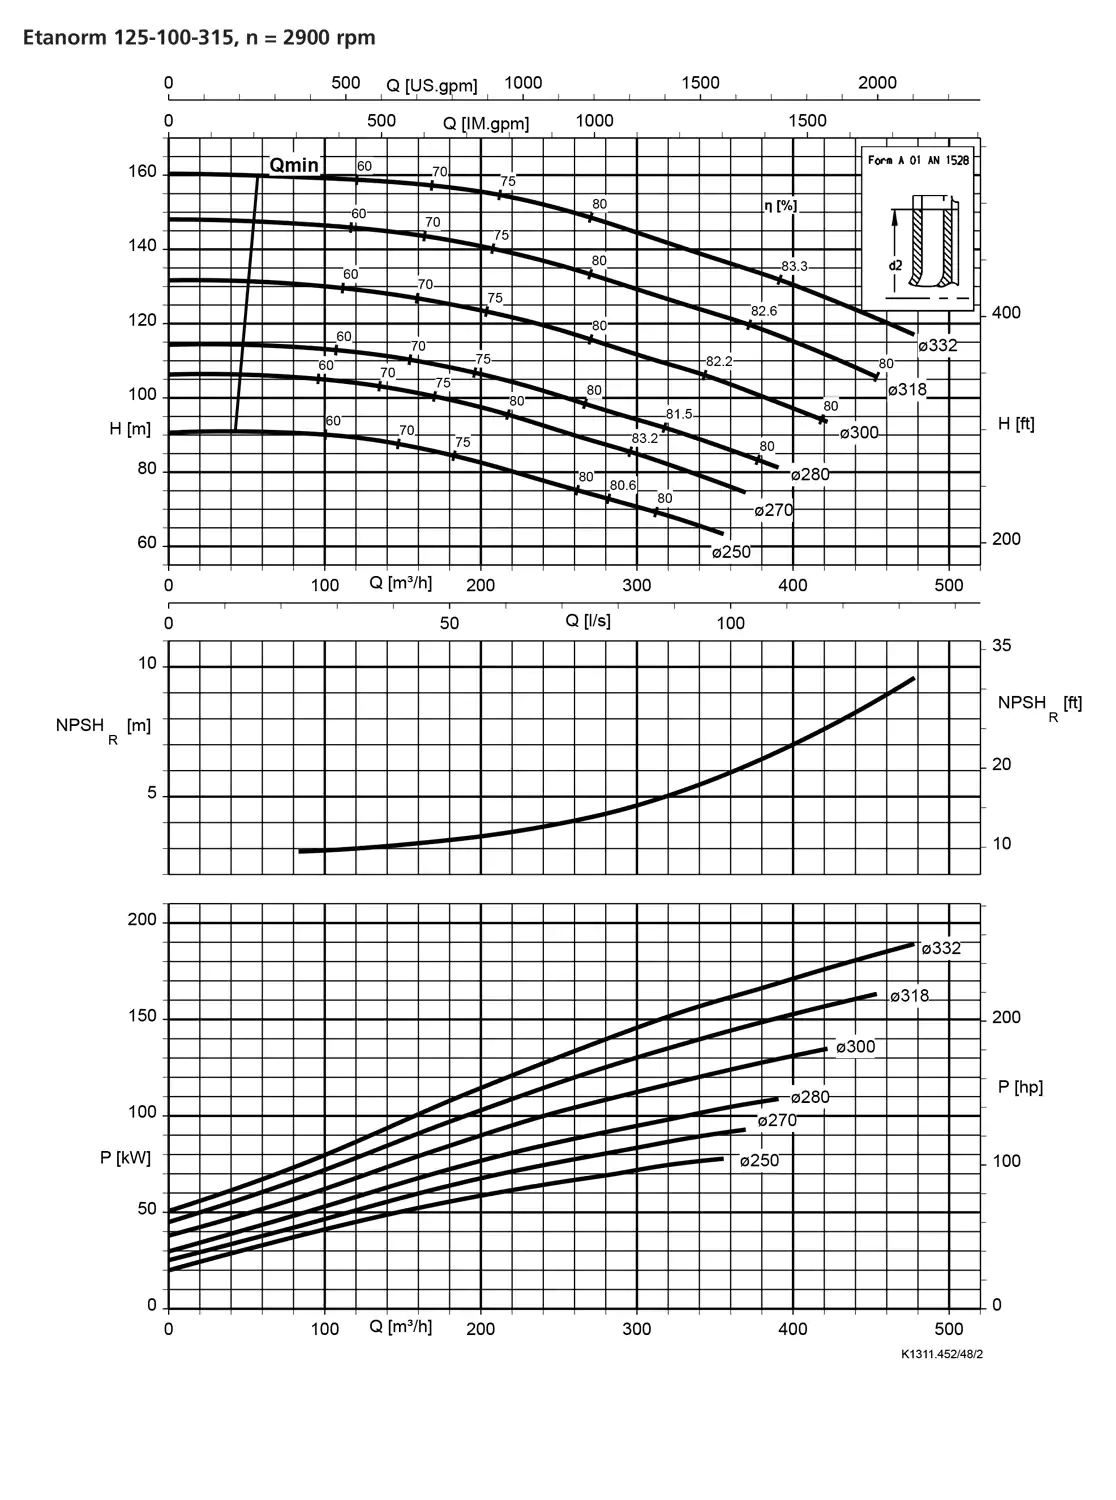 نمودار-کارکرد-پمپ-etanorm-125-100-315-2900